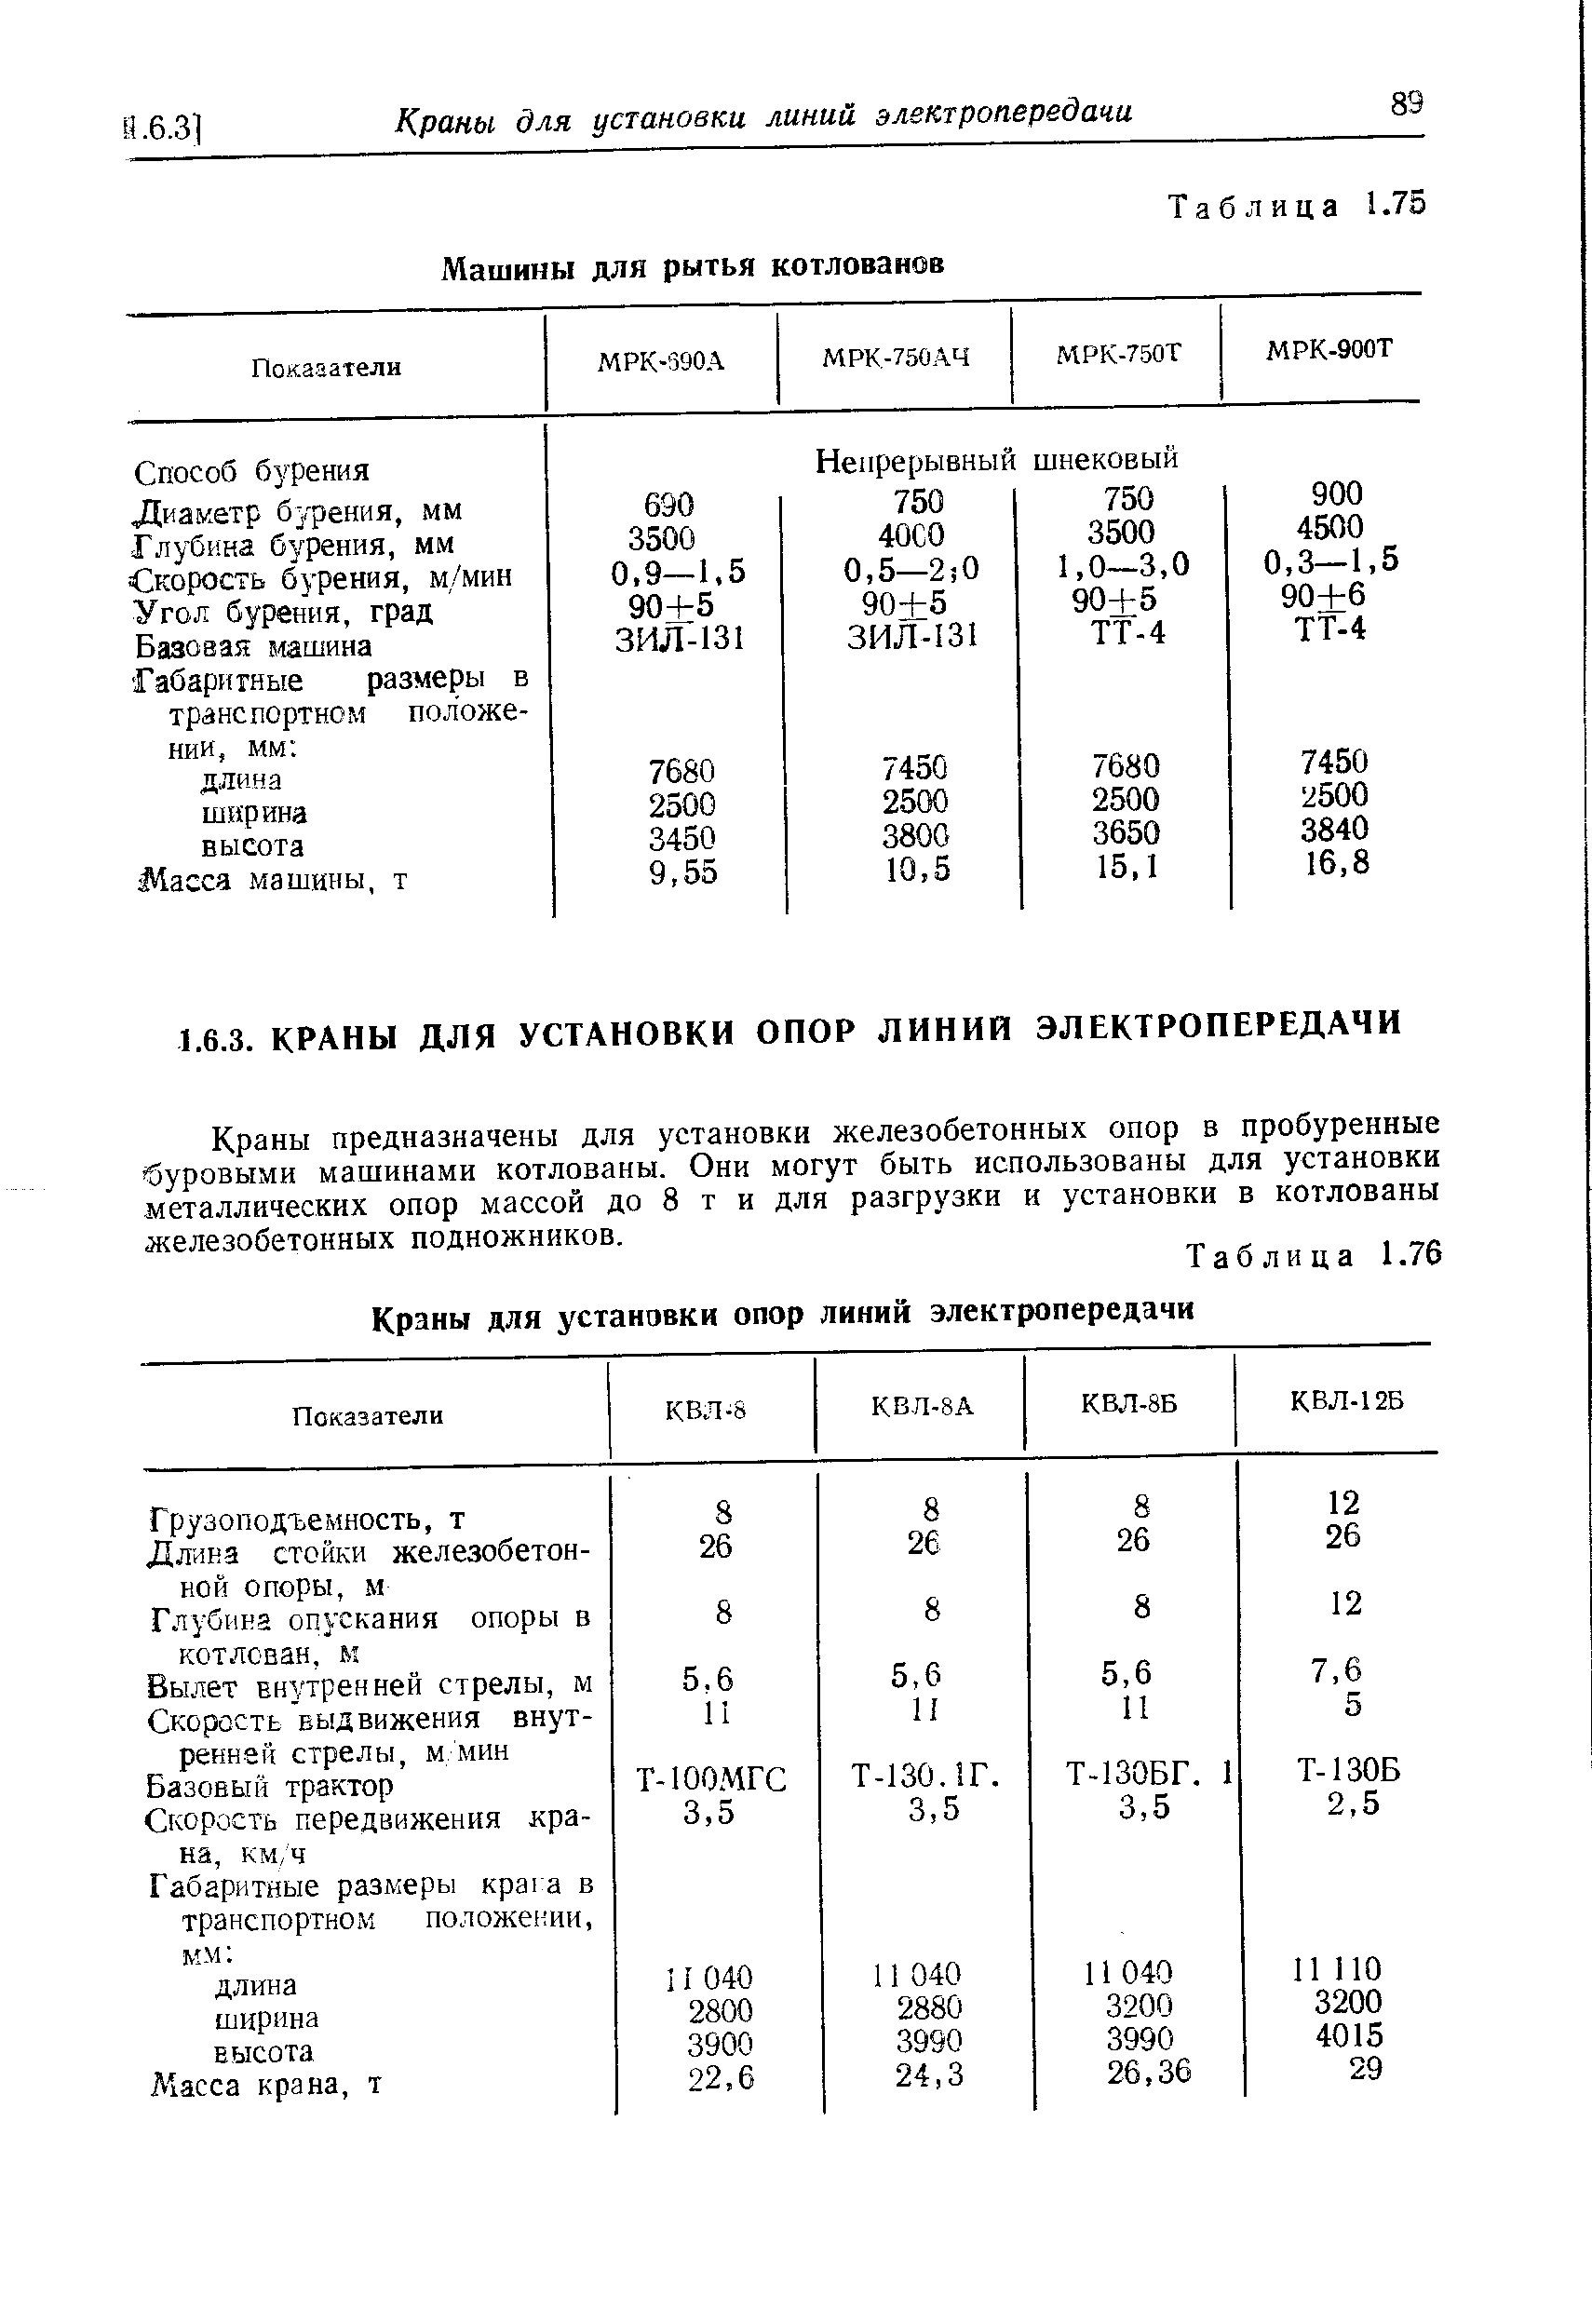 Таблица 1.76 Краны для установки опор линий электропередачи
